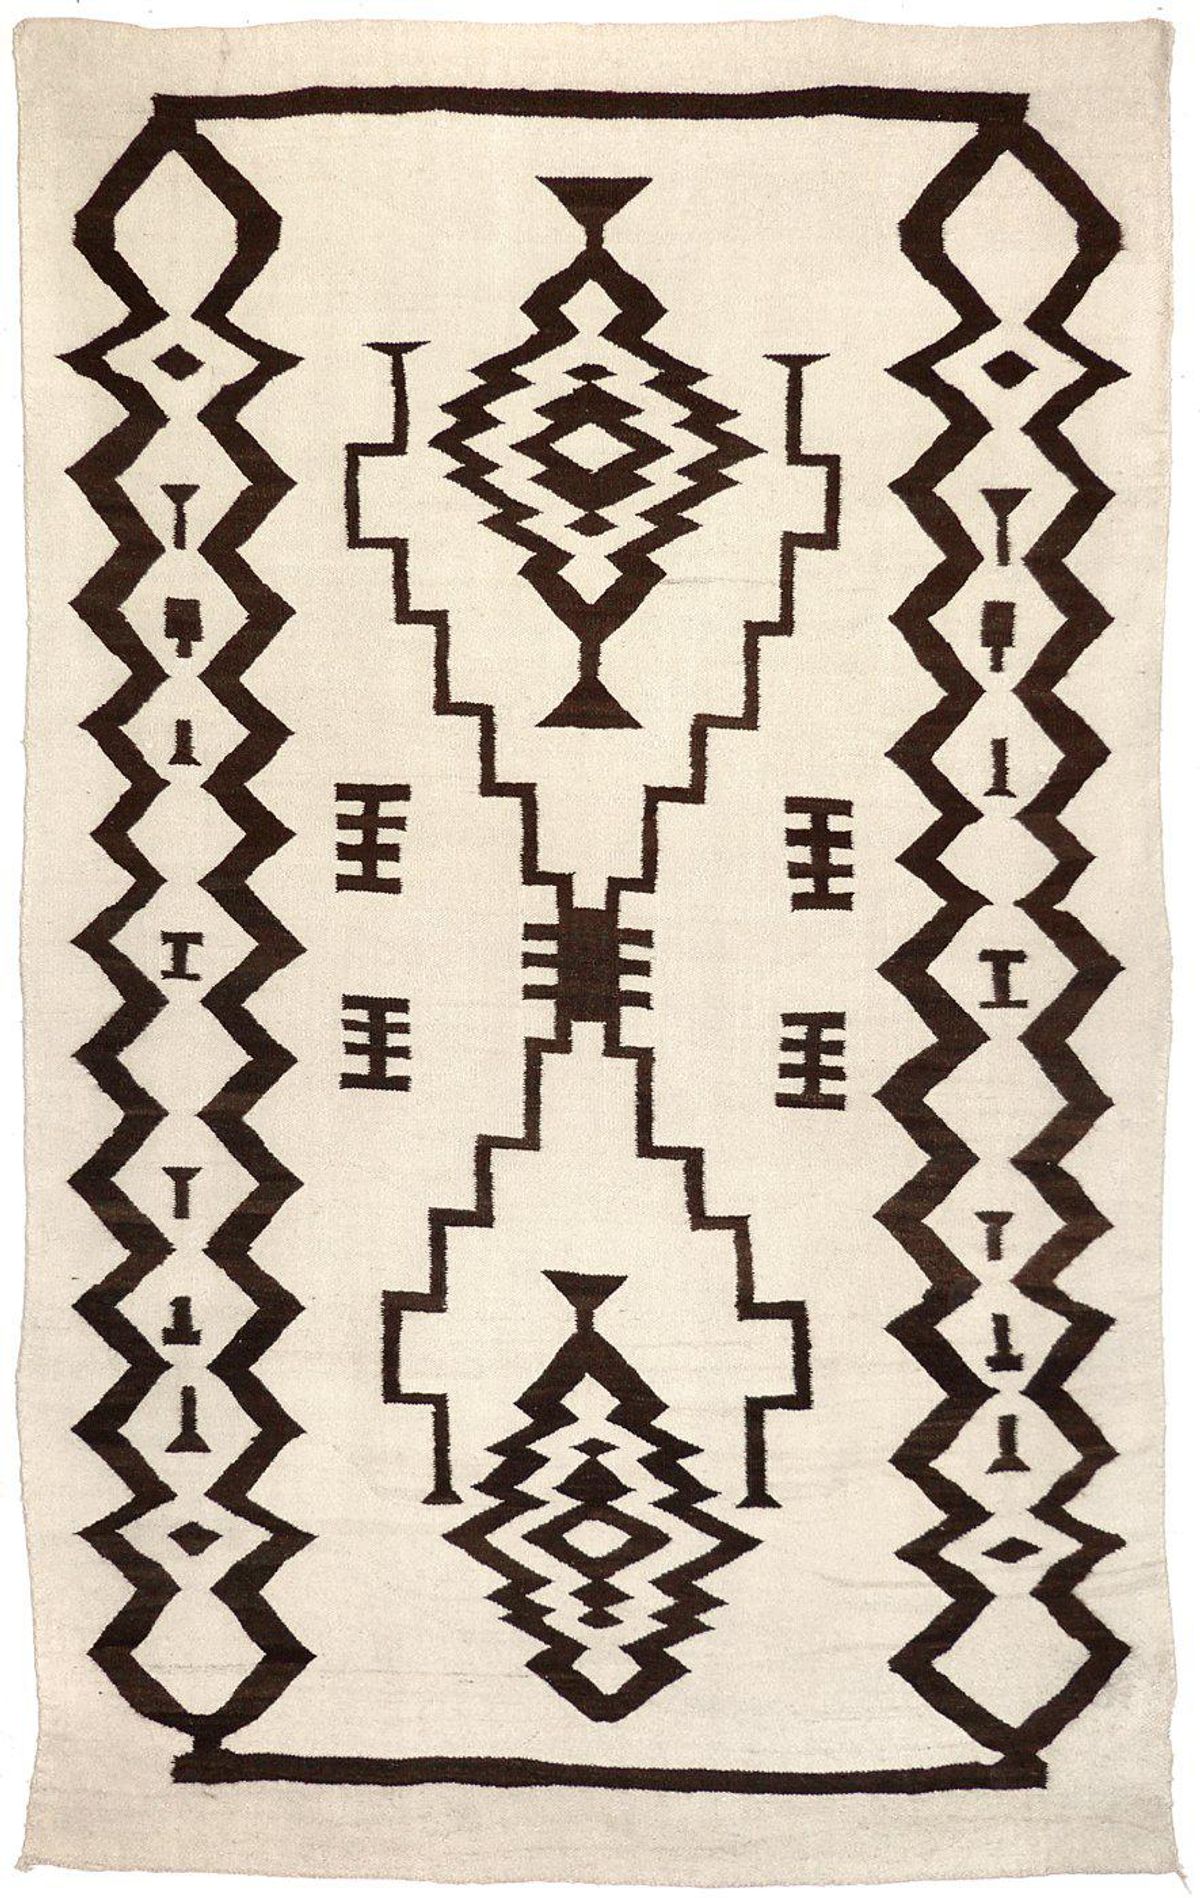 shiprock santa fe navajo natural transitional with storm pattern motif